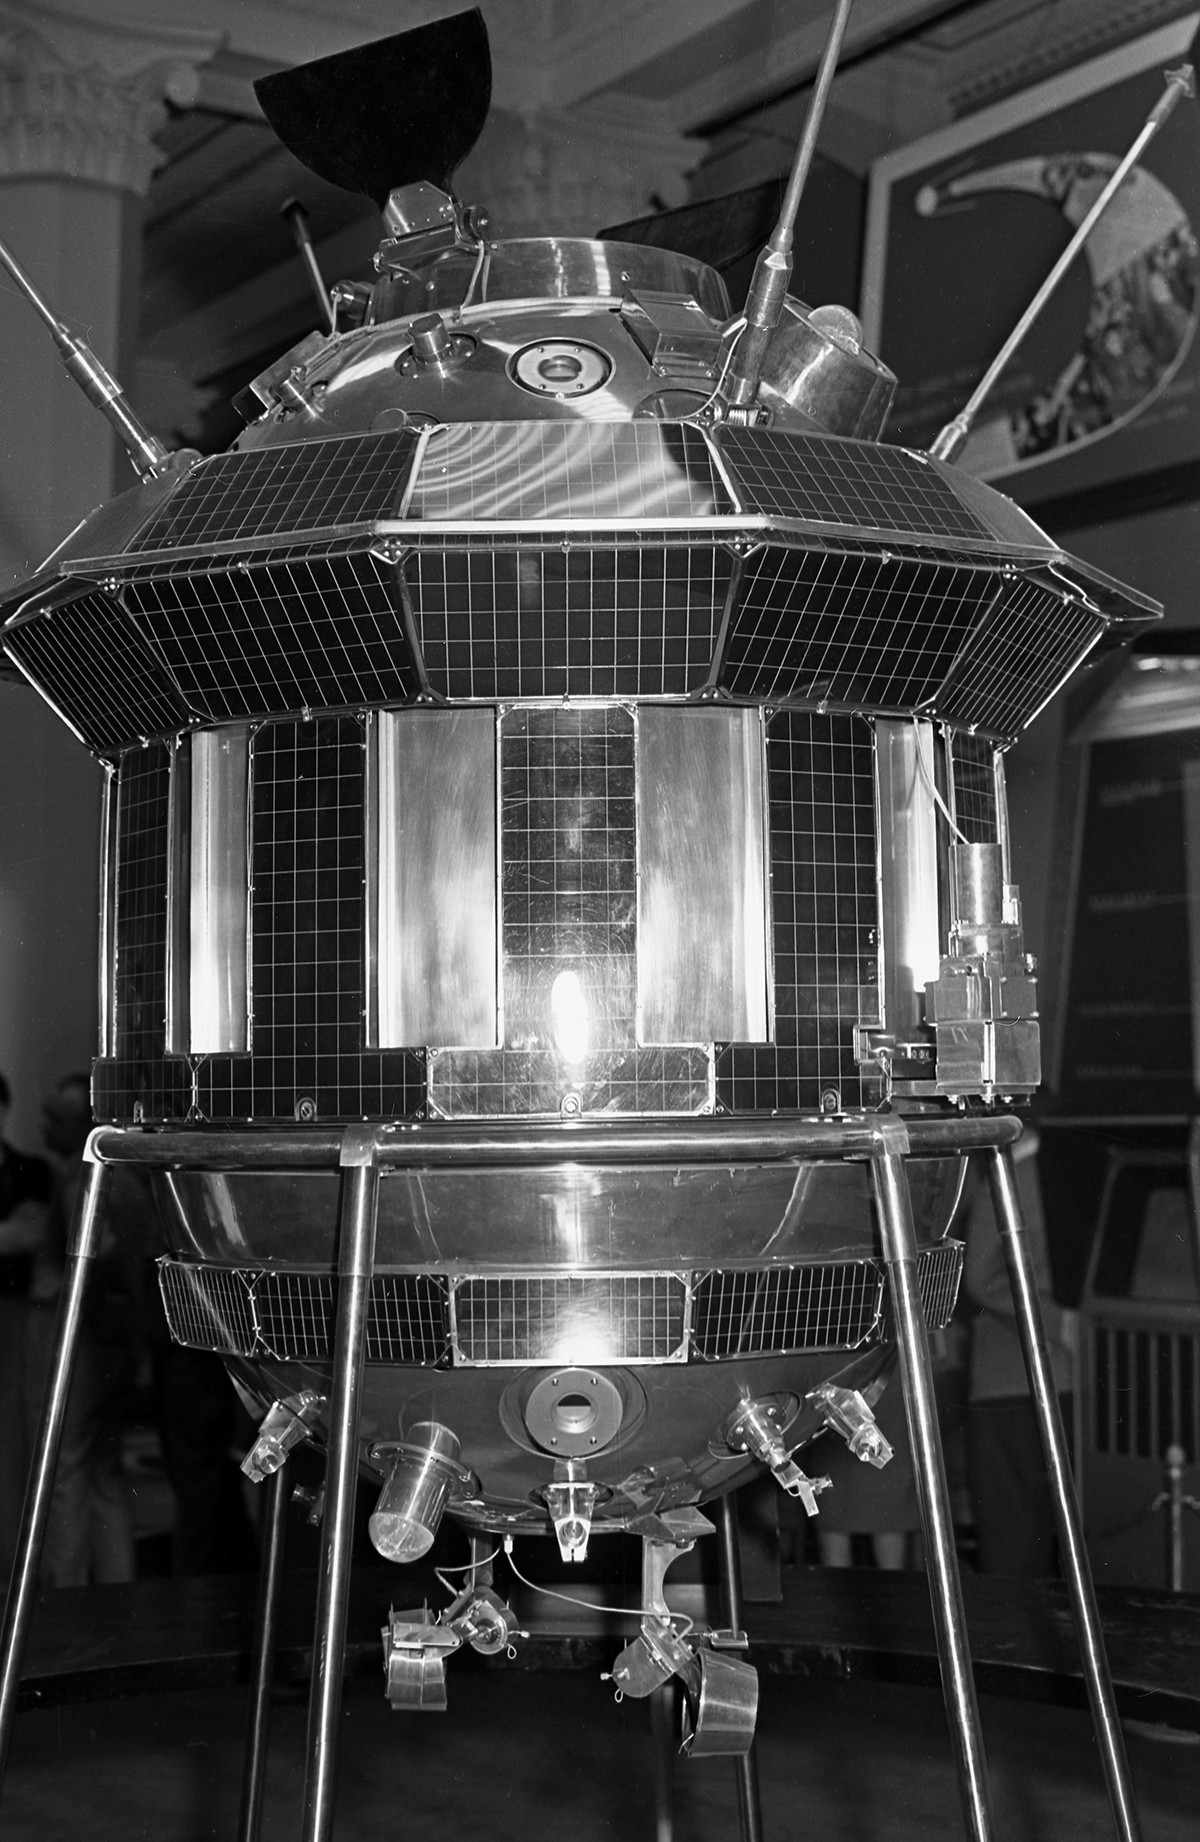 Une copie réduite de la sonde spatiale soviétique Luna-3